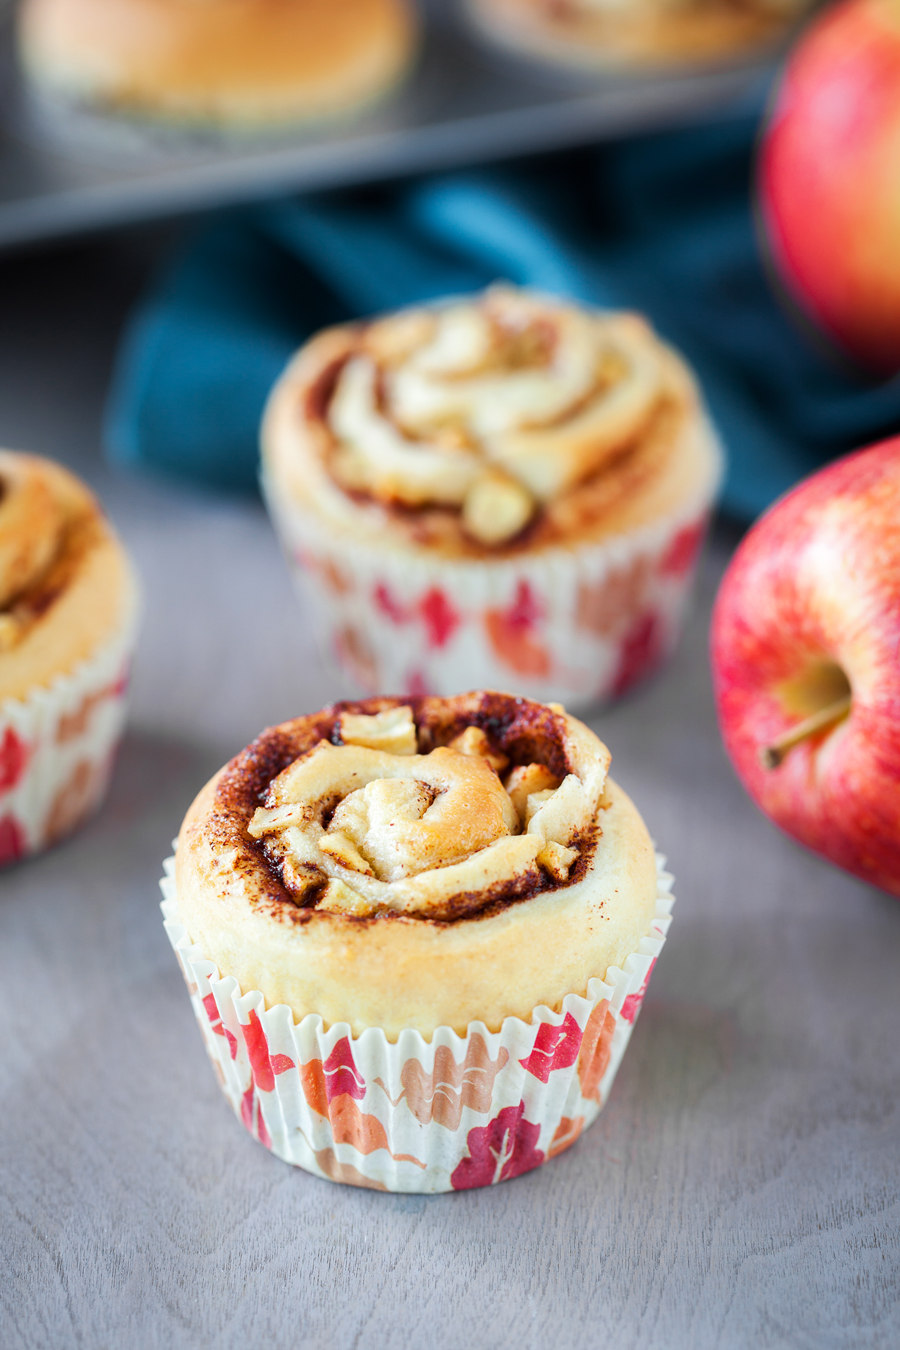 Apple Cinnamon Cupcakes